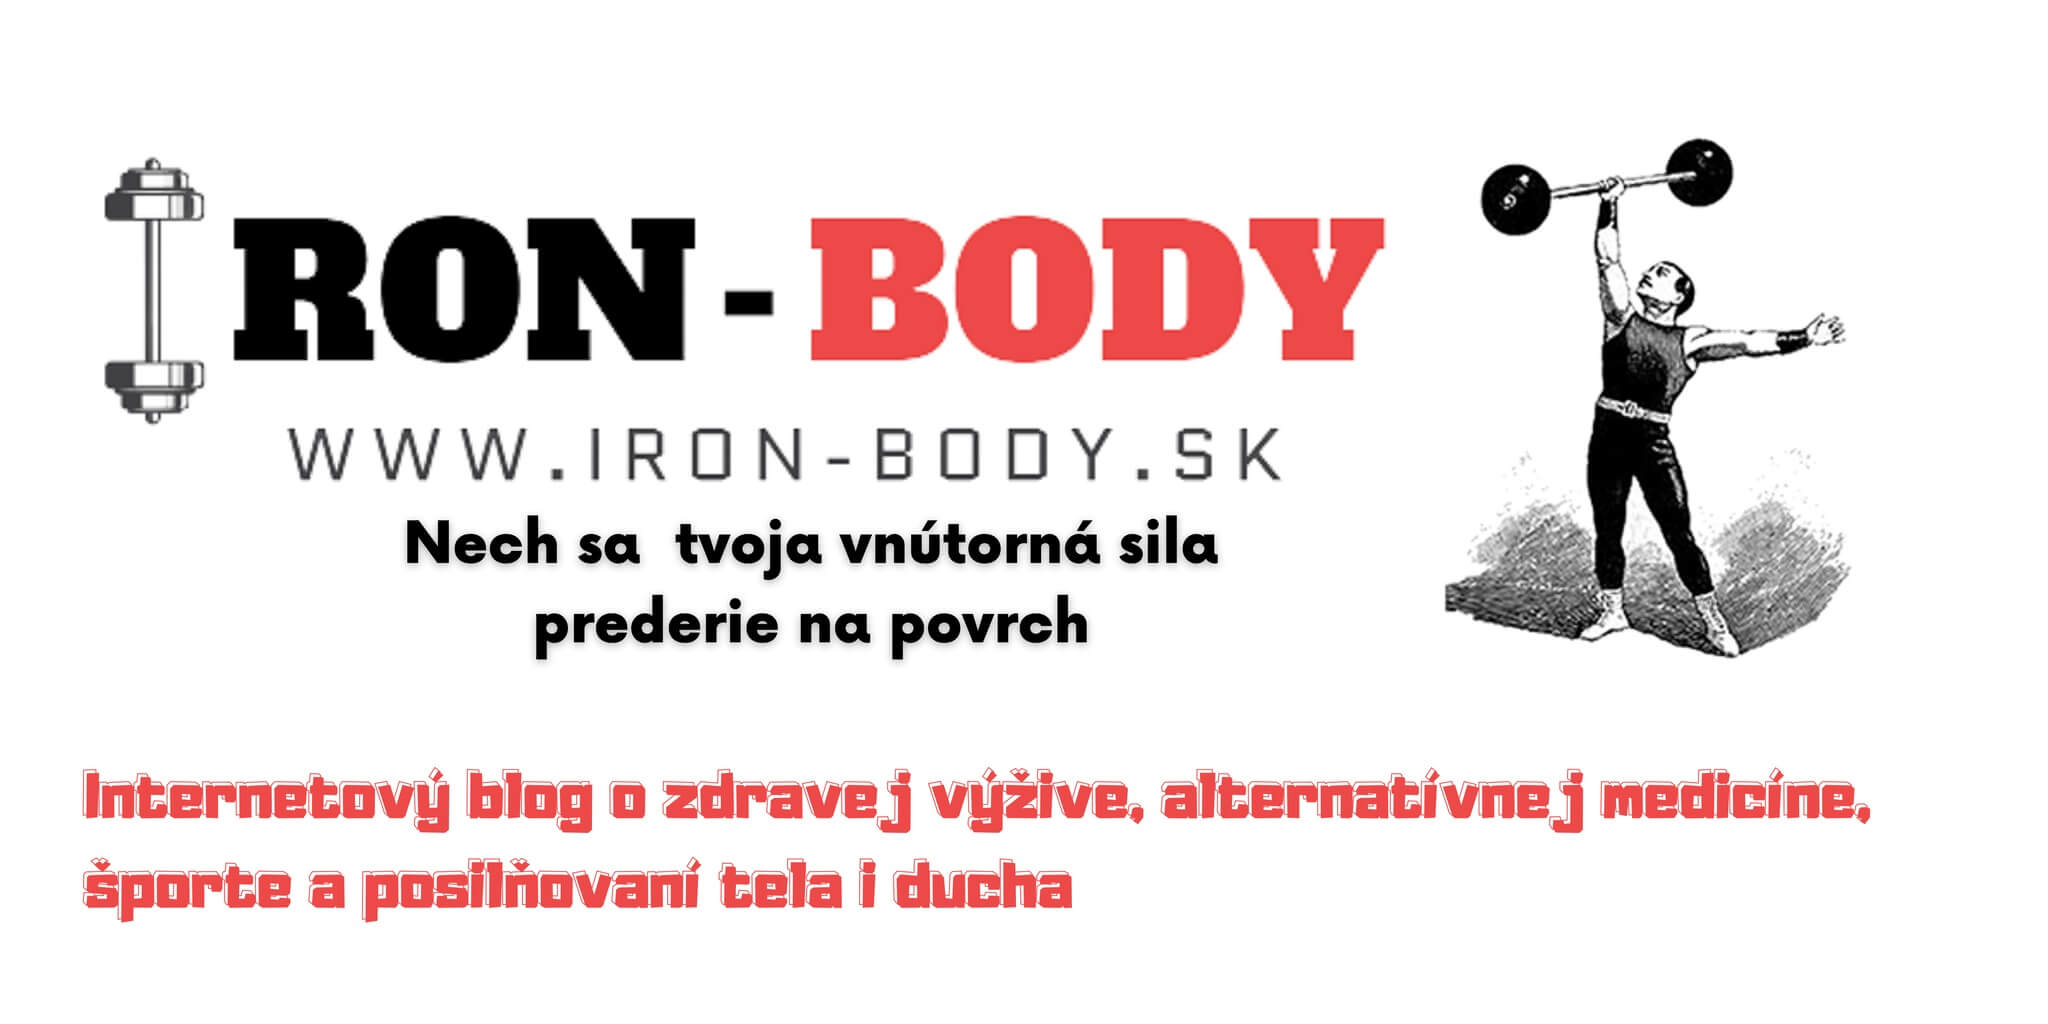 IRON-BODY